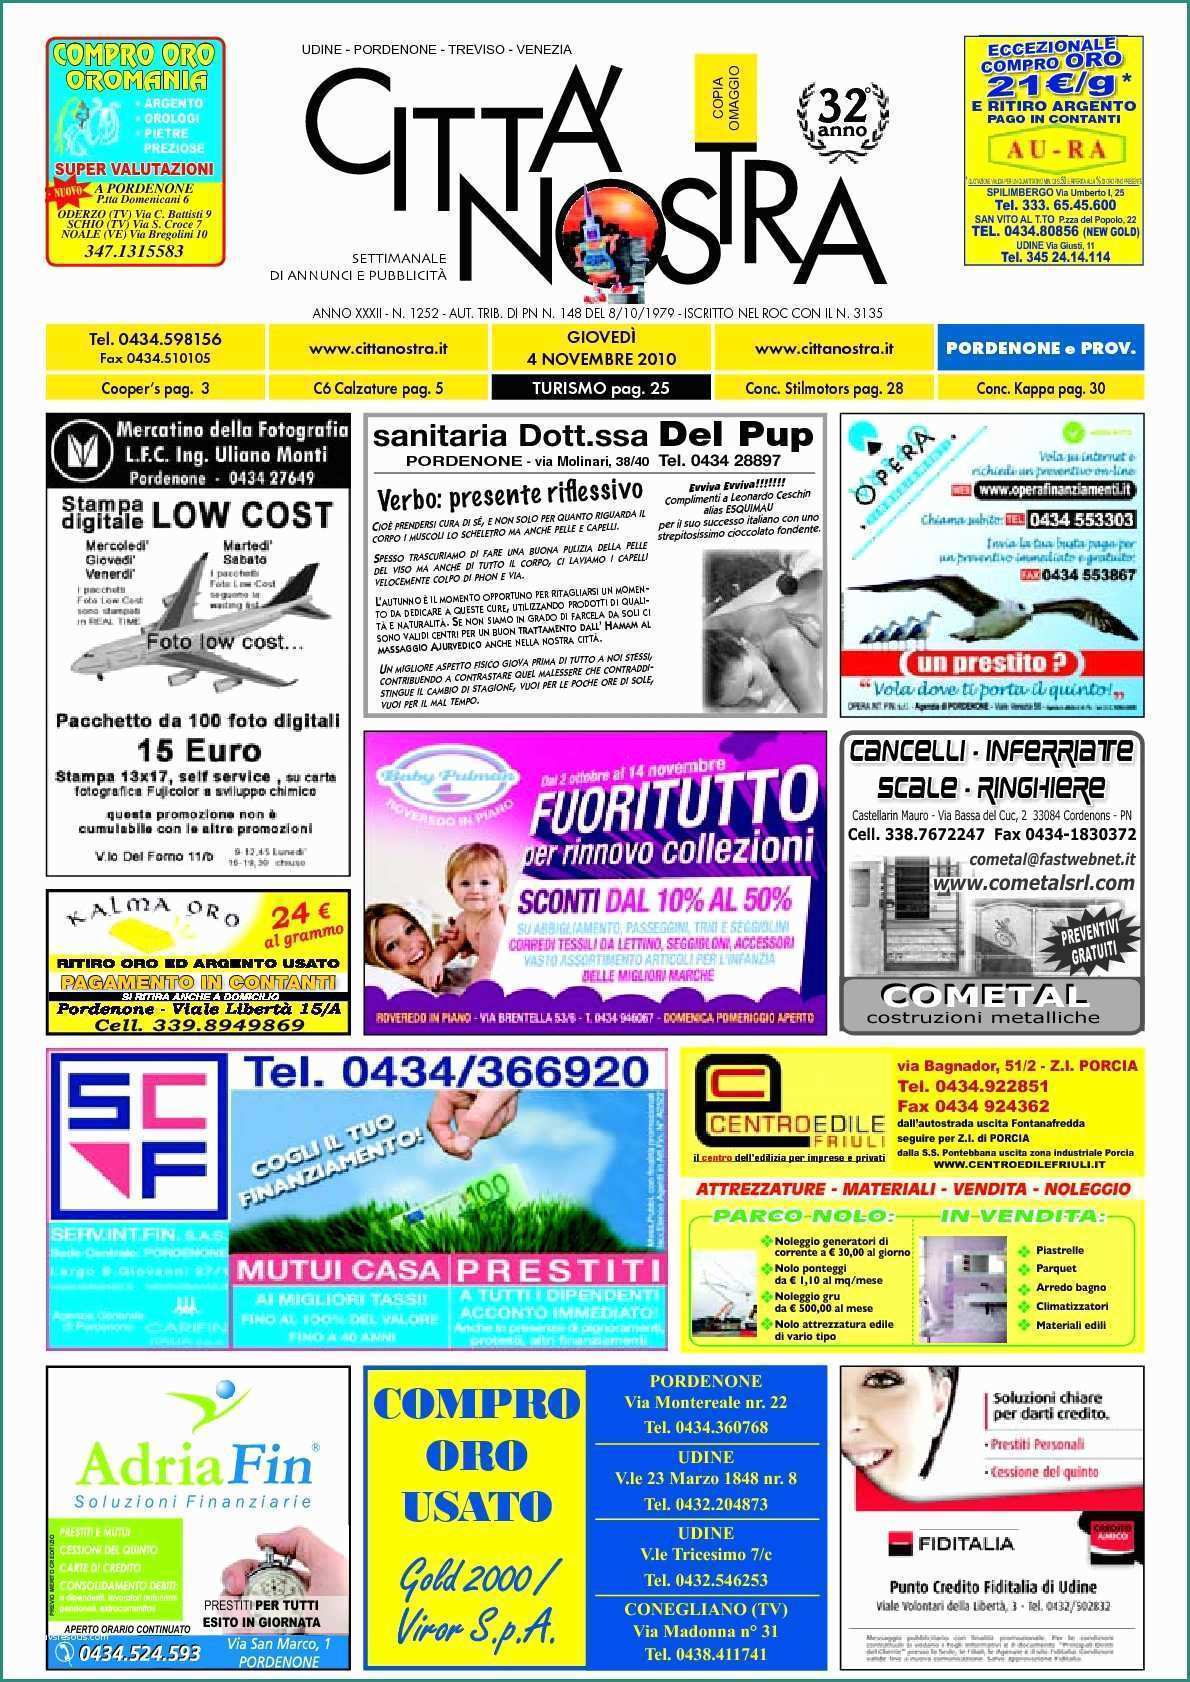 Monoblocchi Prefabbricati Usati E Calaméo Citt  Nostra Pordenone Del 04 11 2010 N 1252